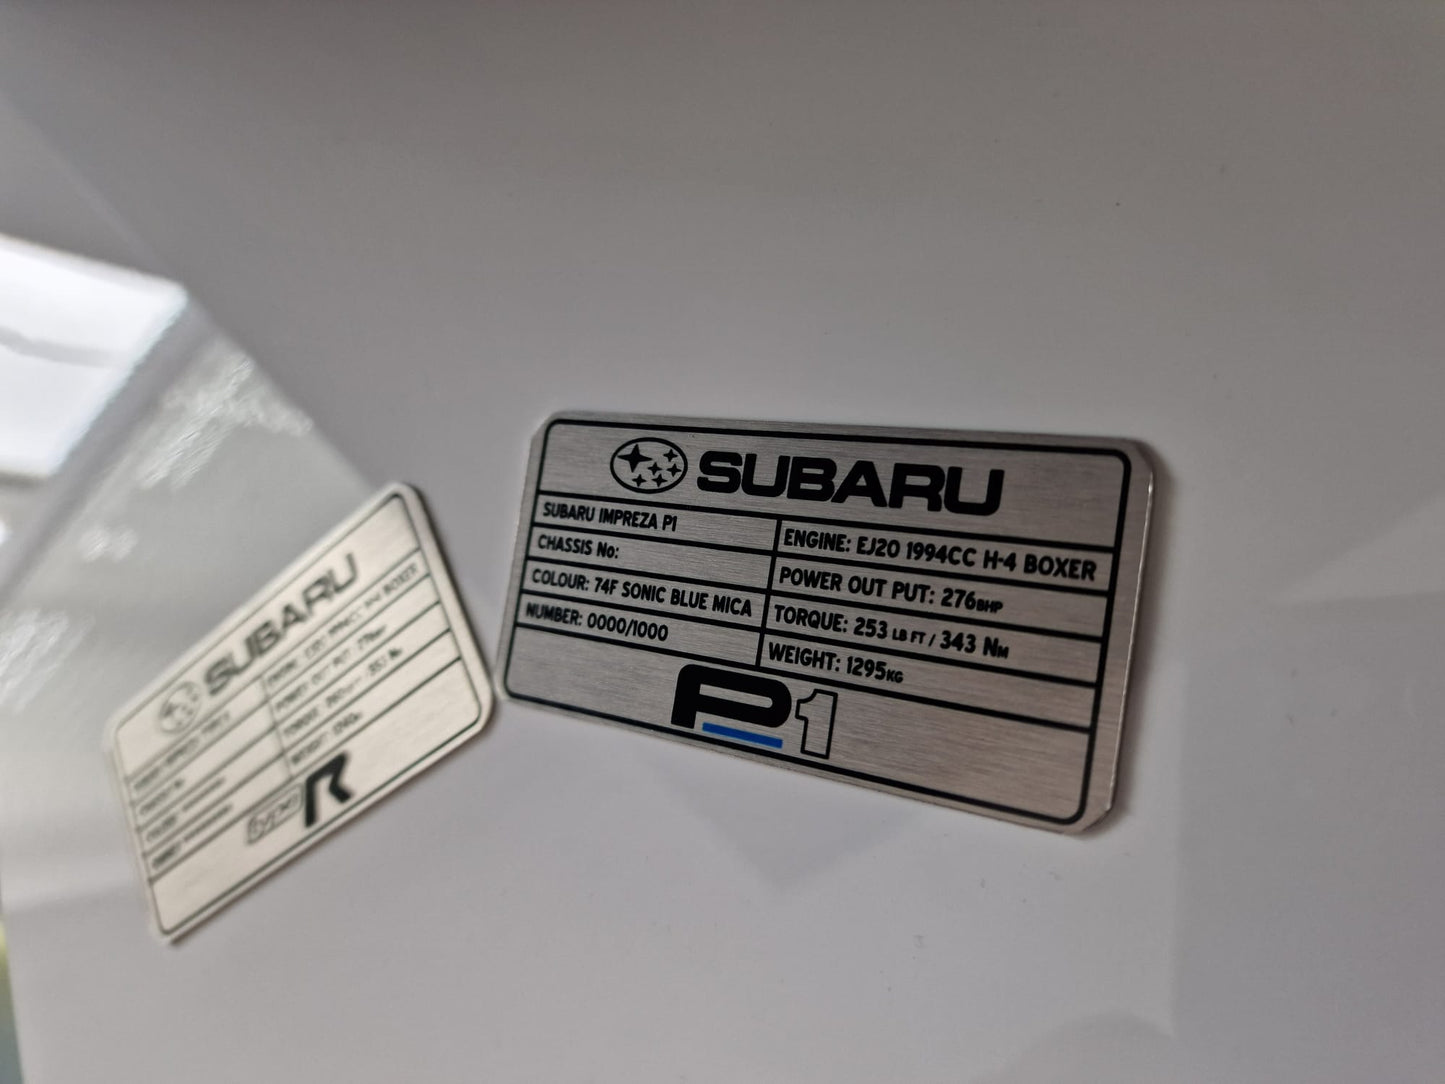 Subaru Impreza P1 Customised Plaque (for under bonnet).